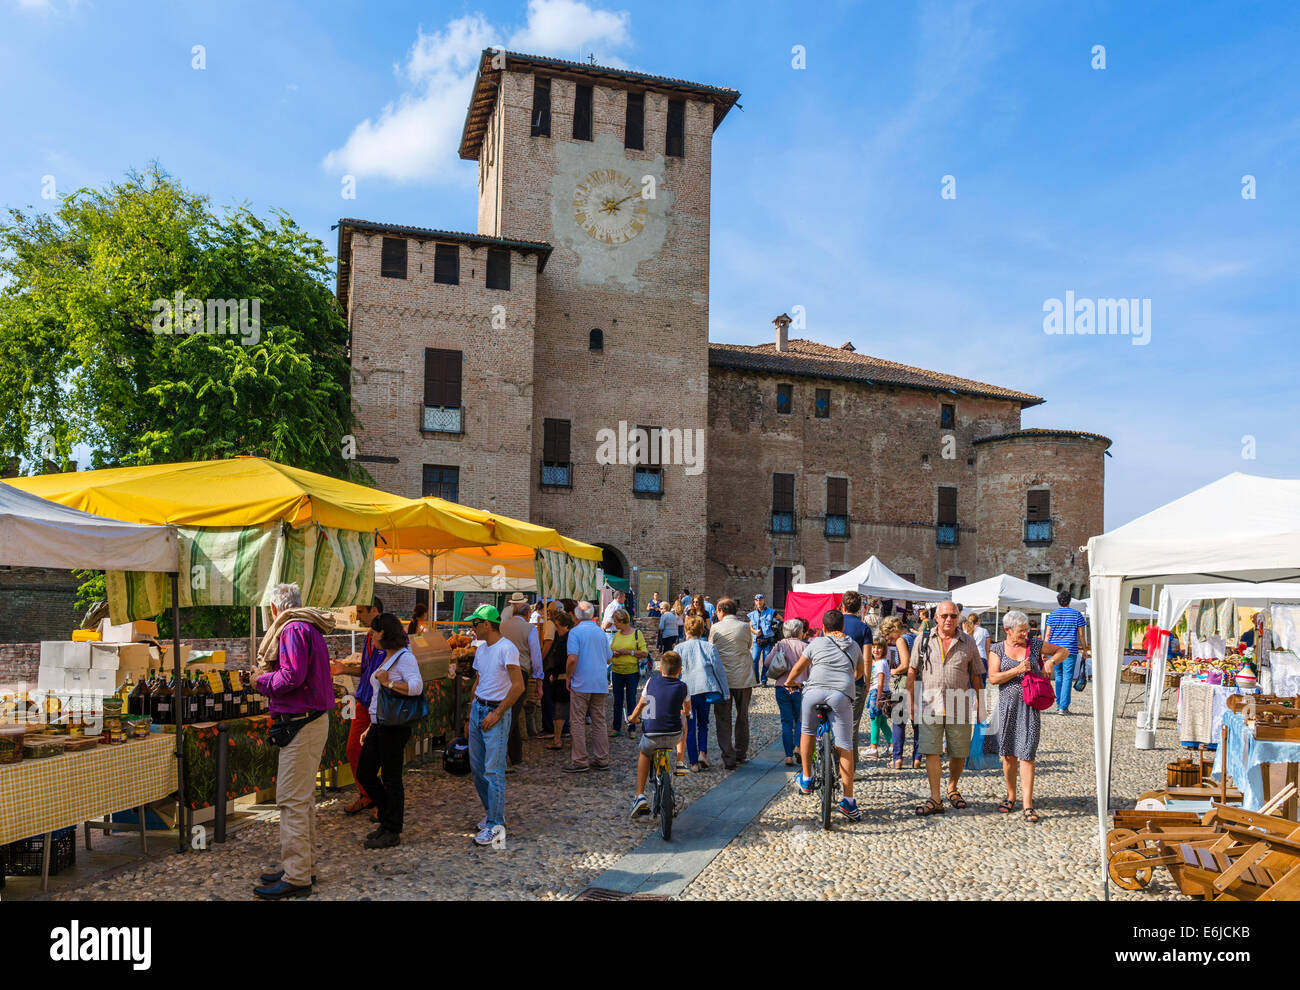 Sunday market in front of Sanvitale Castle (Rocca Sanvitale) in historic old town of Fontanellato, Parma, Emilia Romagna, Italy Stock Photo